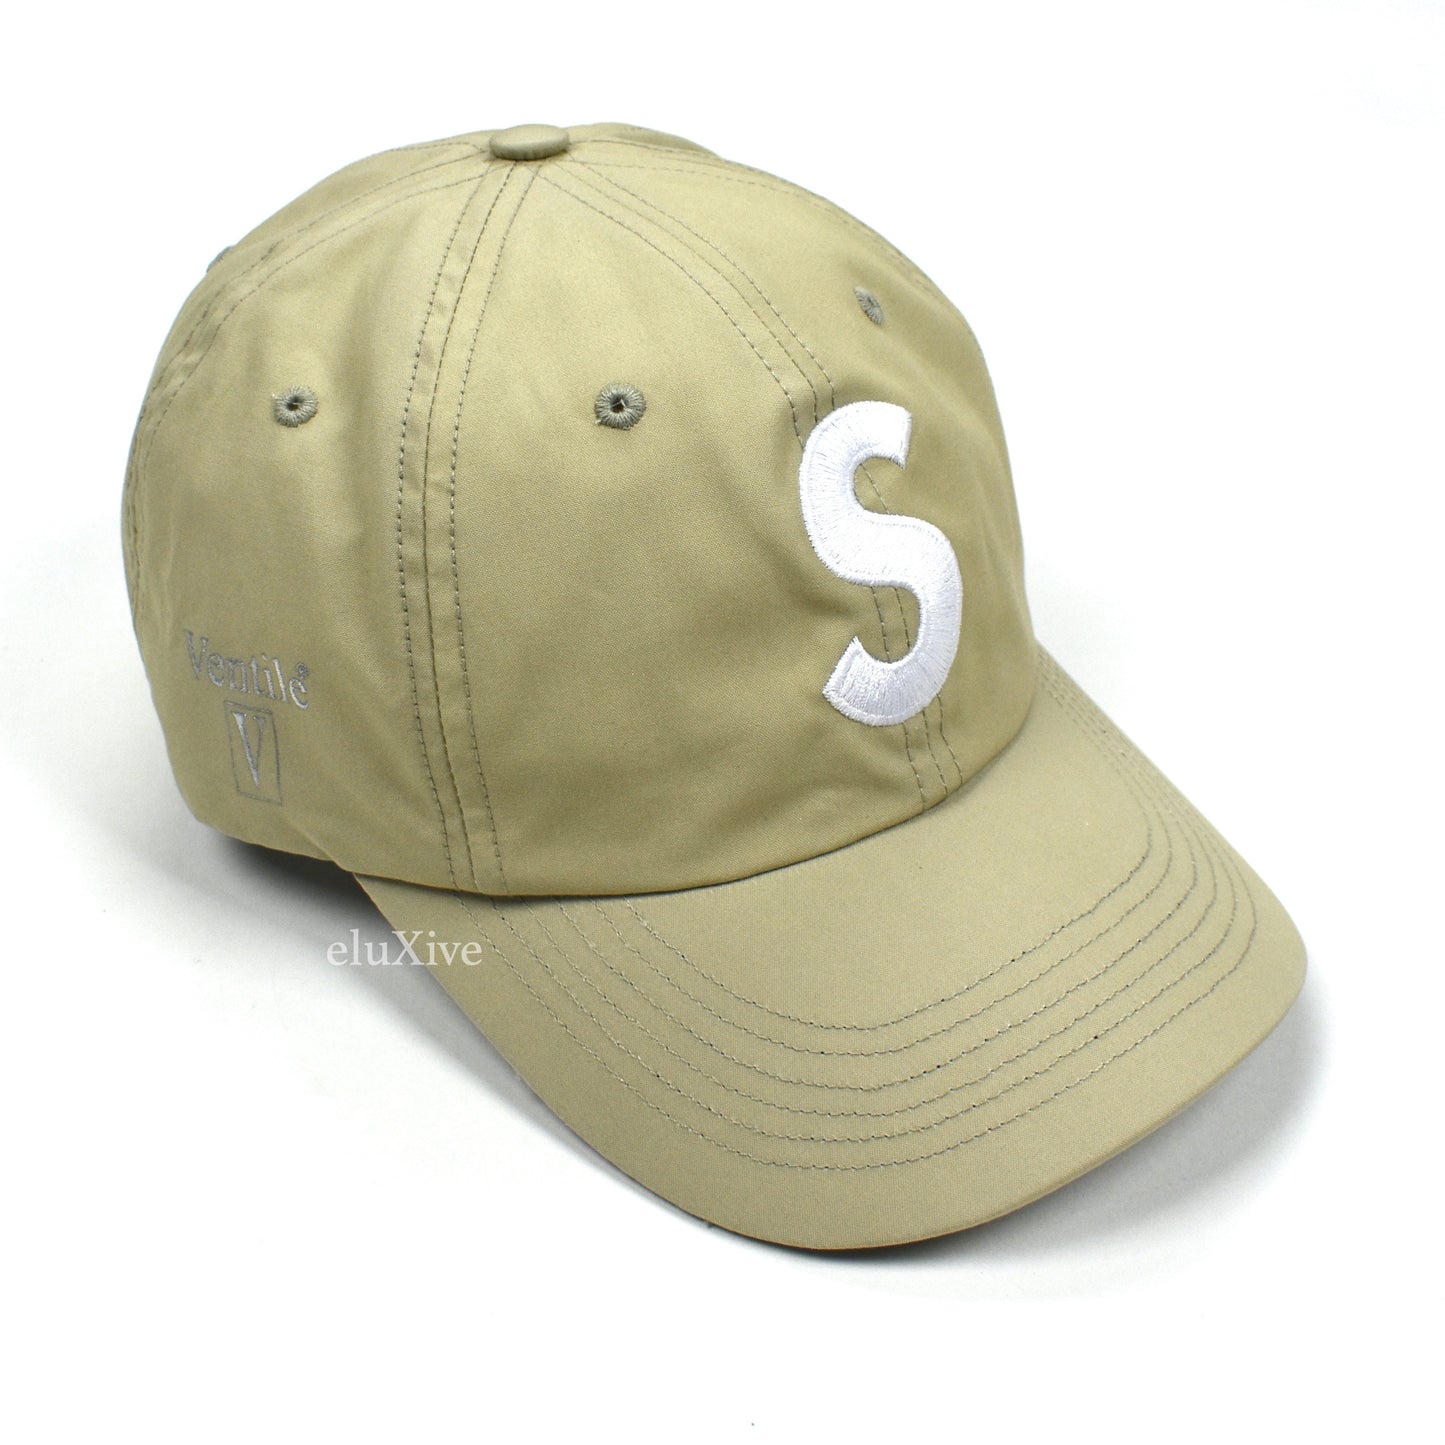 Supreme - Ventile S-Logo Hat (Stone)